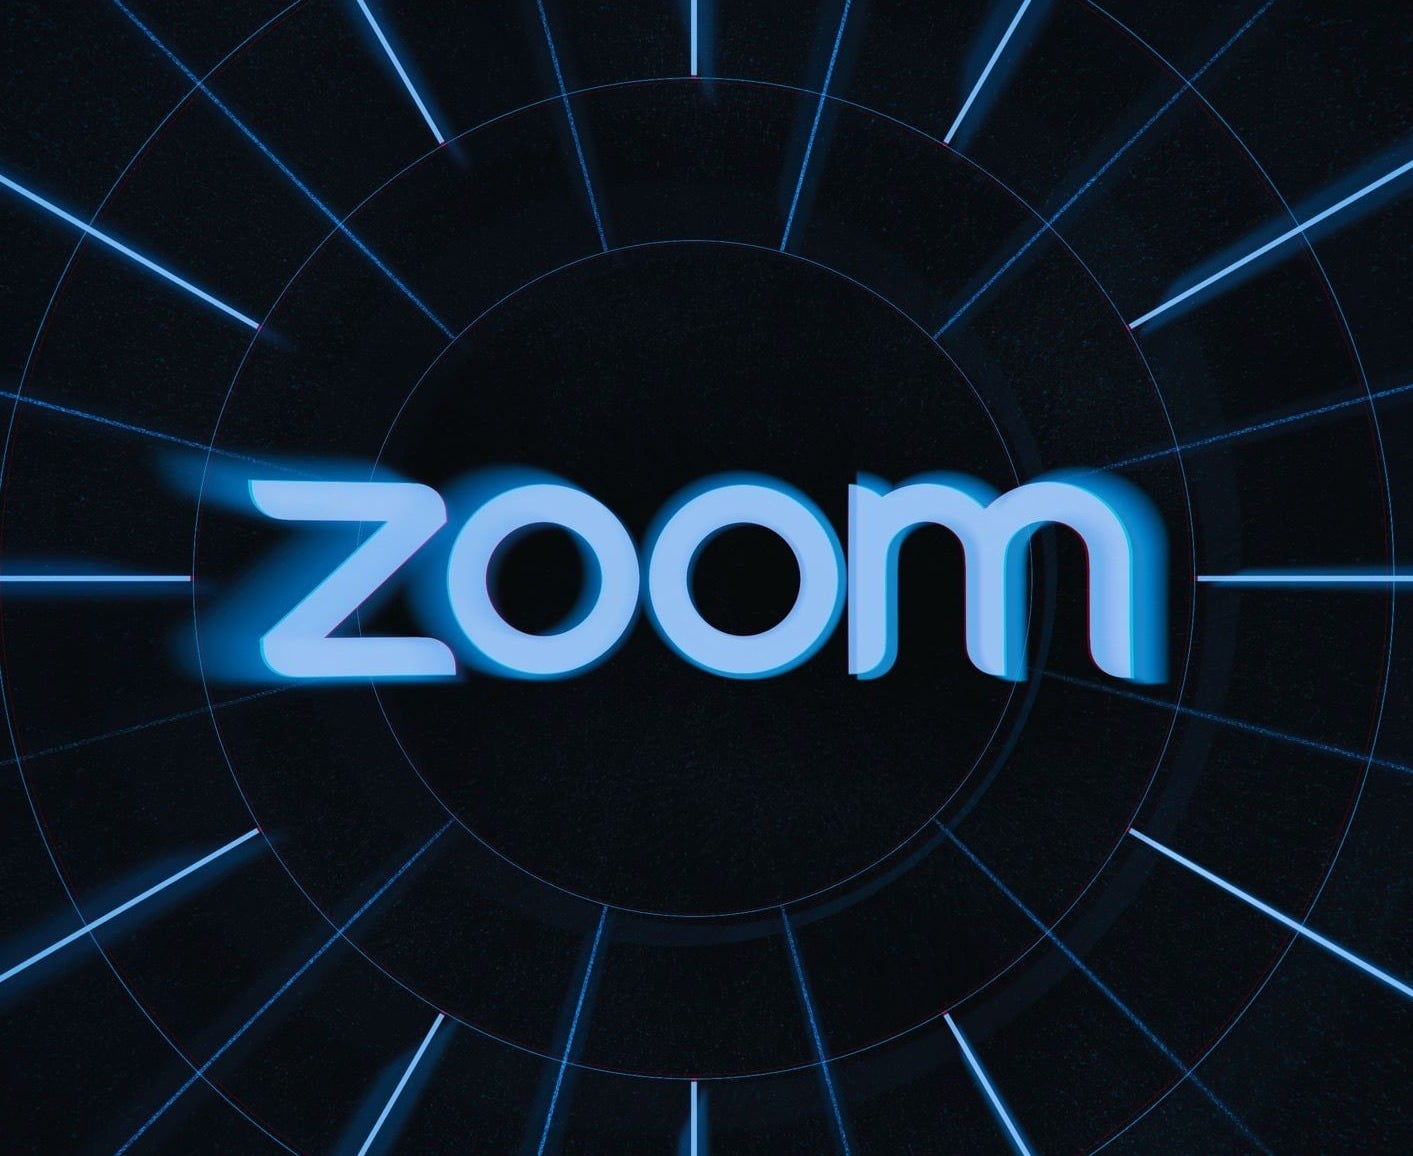 Zoom logo on black background